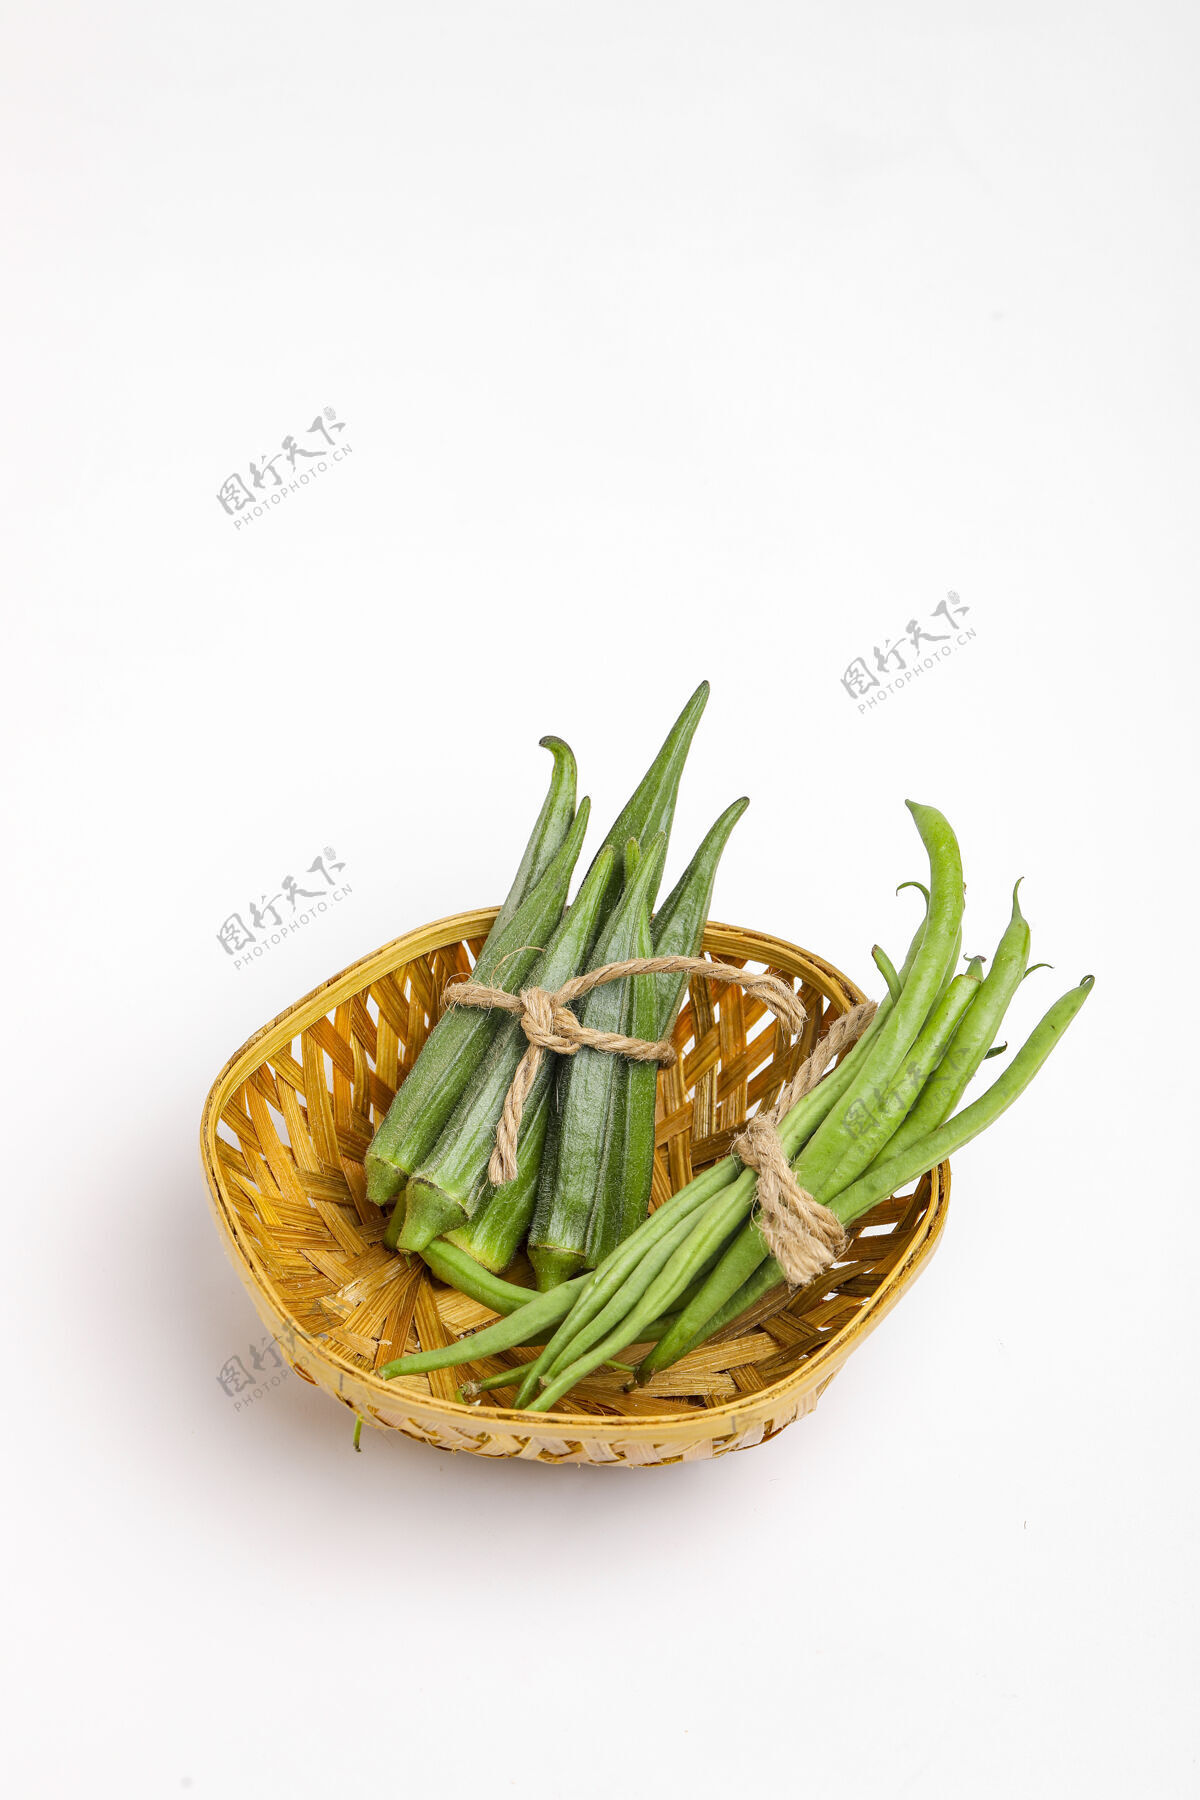 民族普通豆荚和秋葵 切片豆类花园